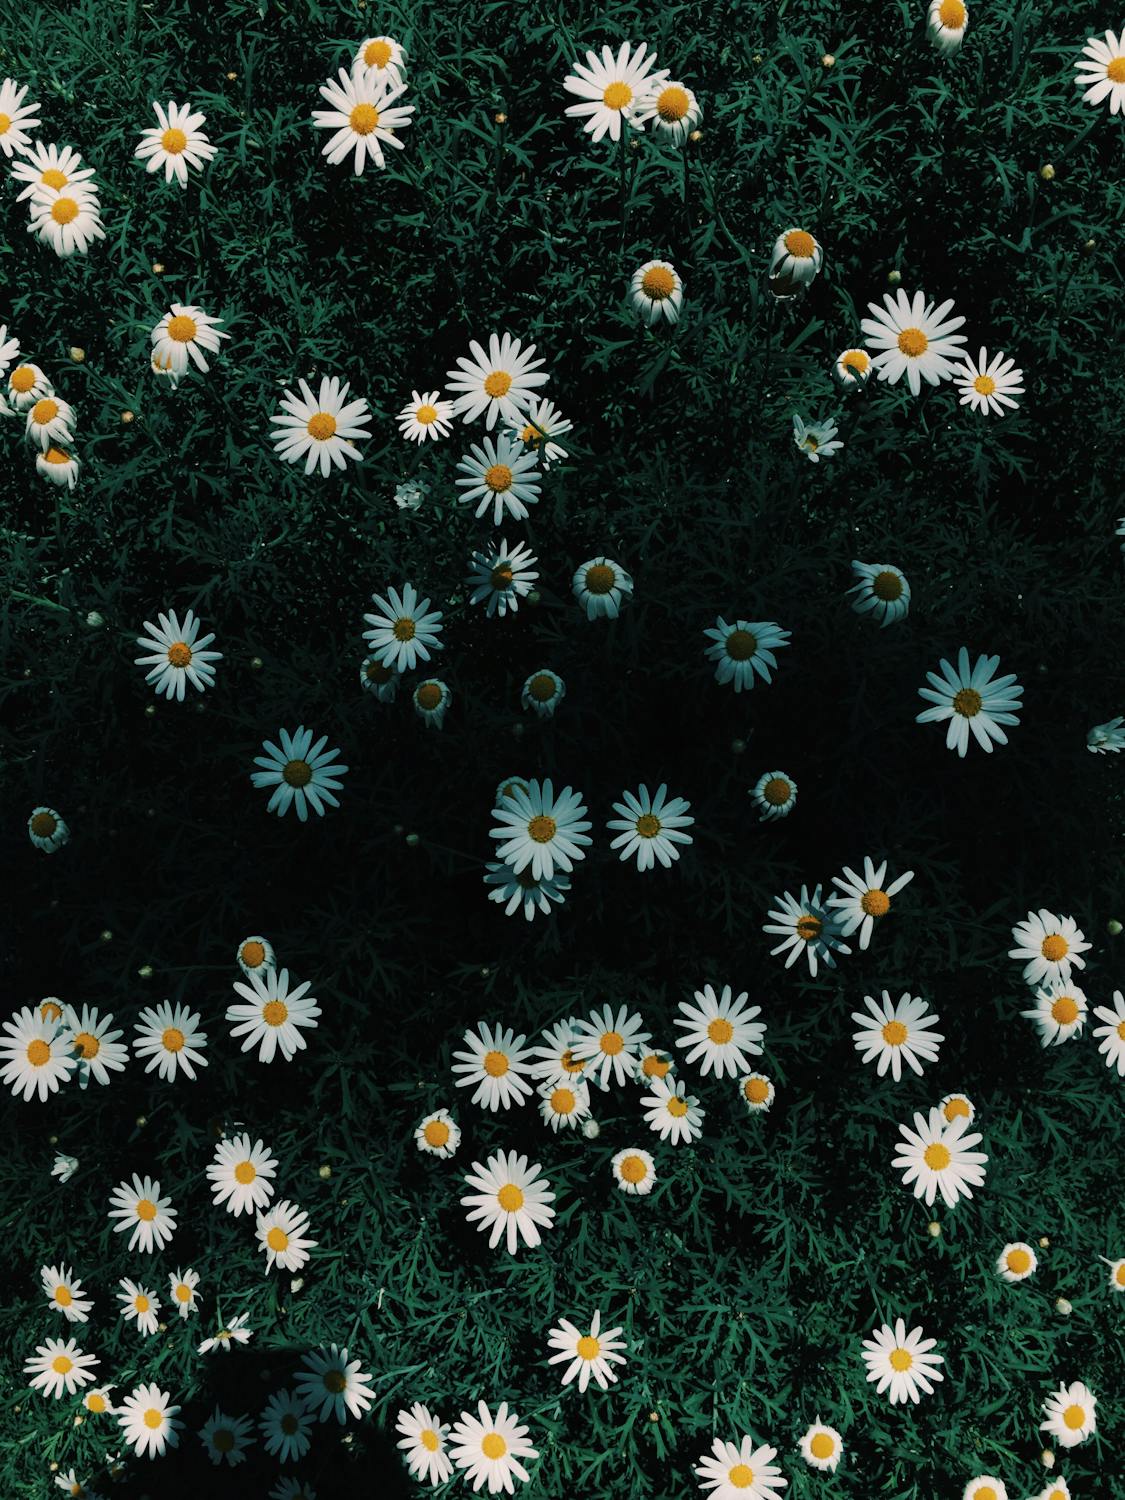 Daisy Flowers · Free Stock Photo